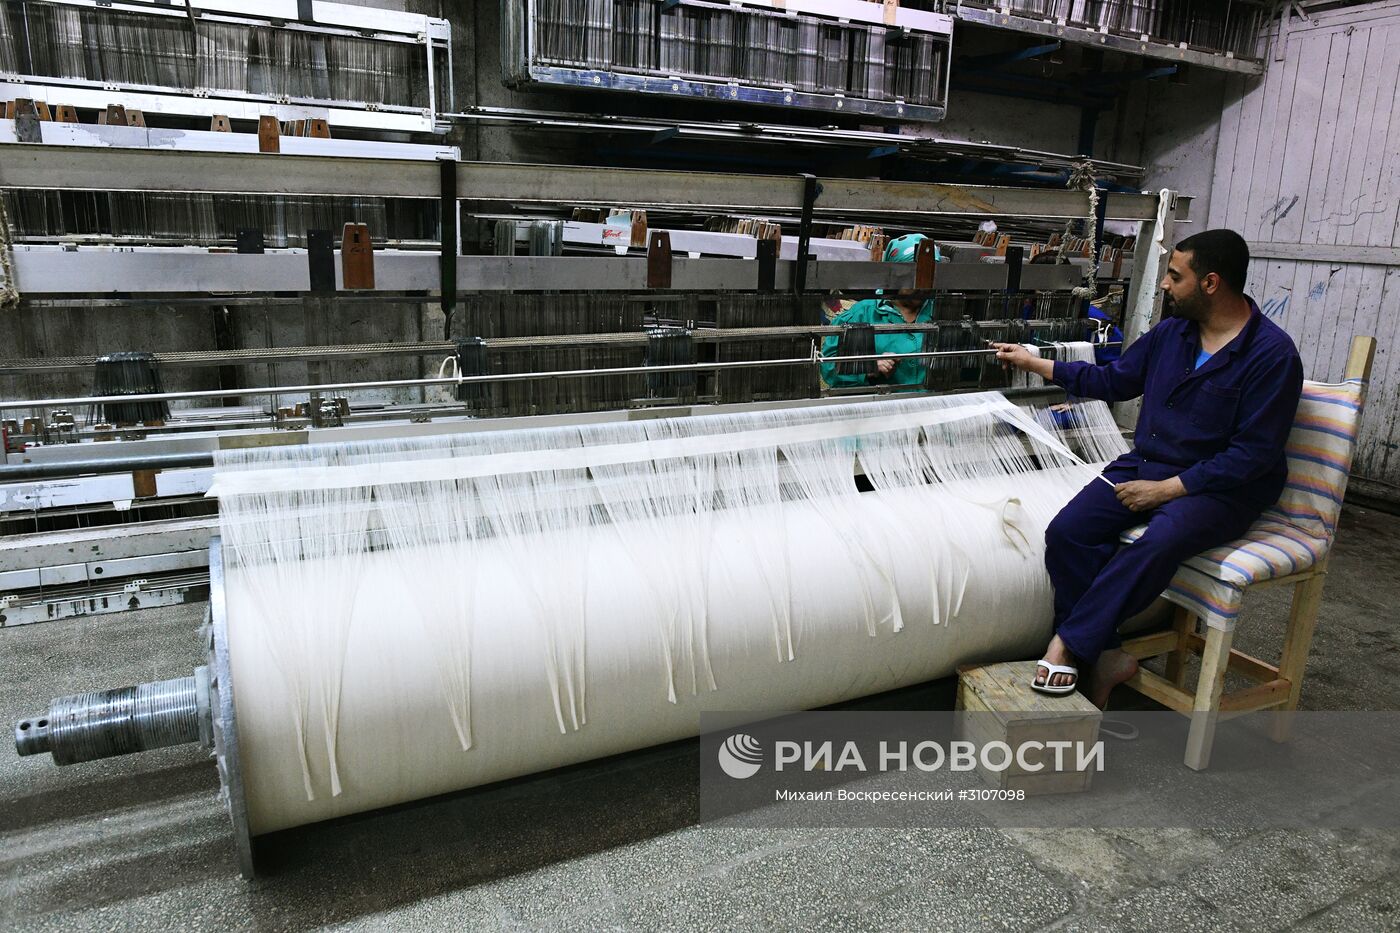 Завод по изготовлению текстиля в южном пригороде Дамаска